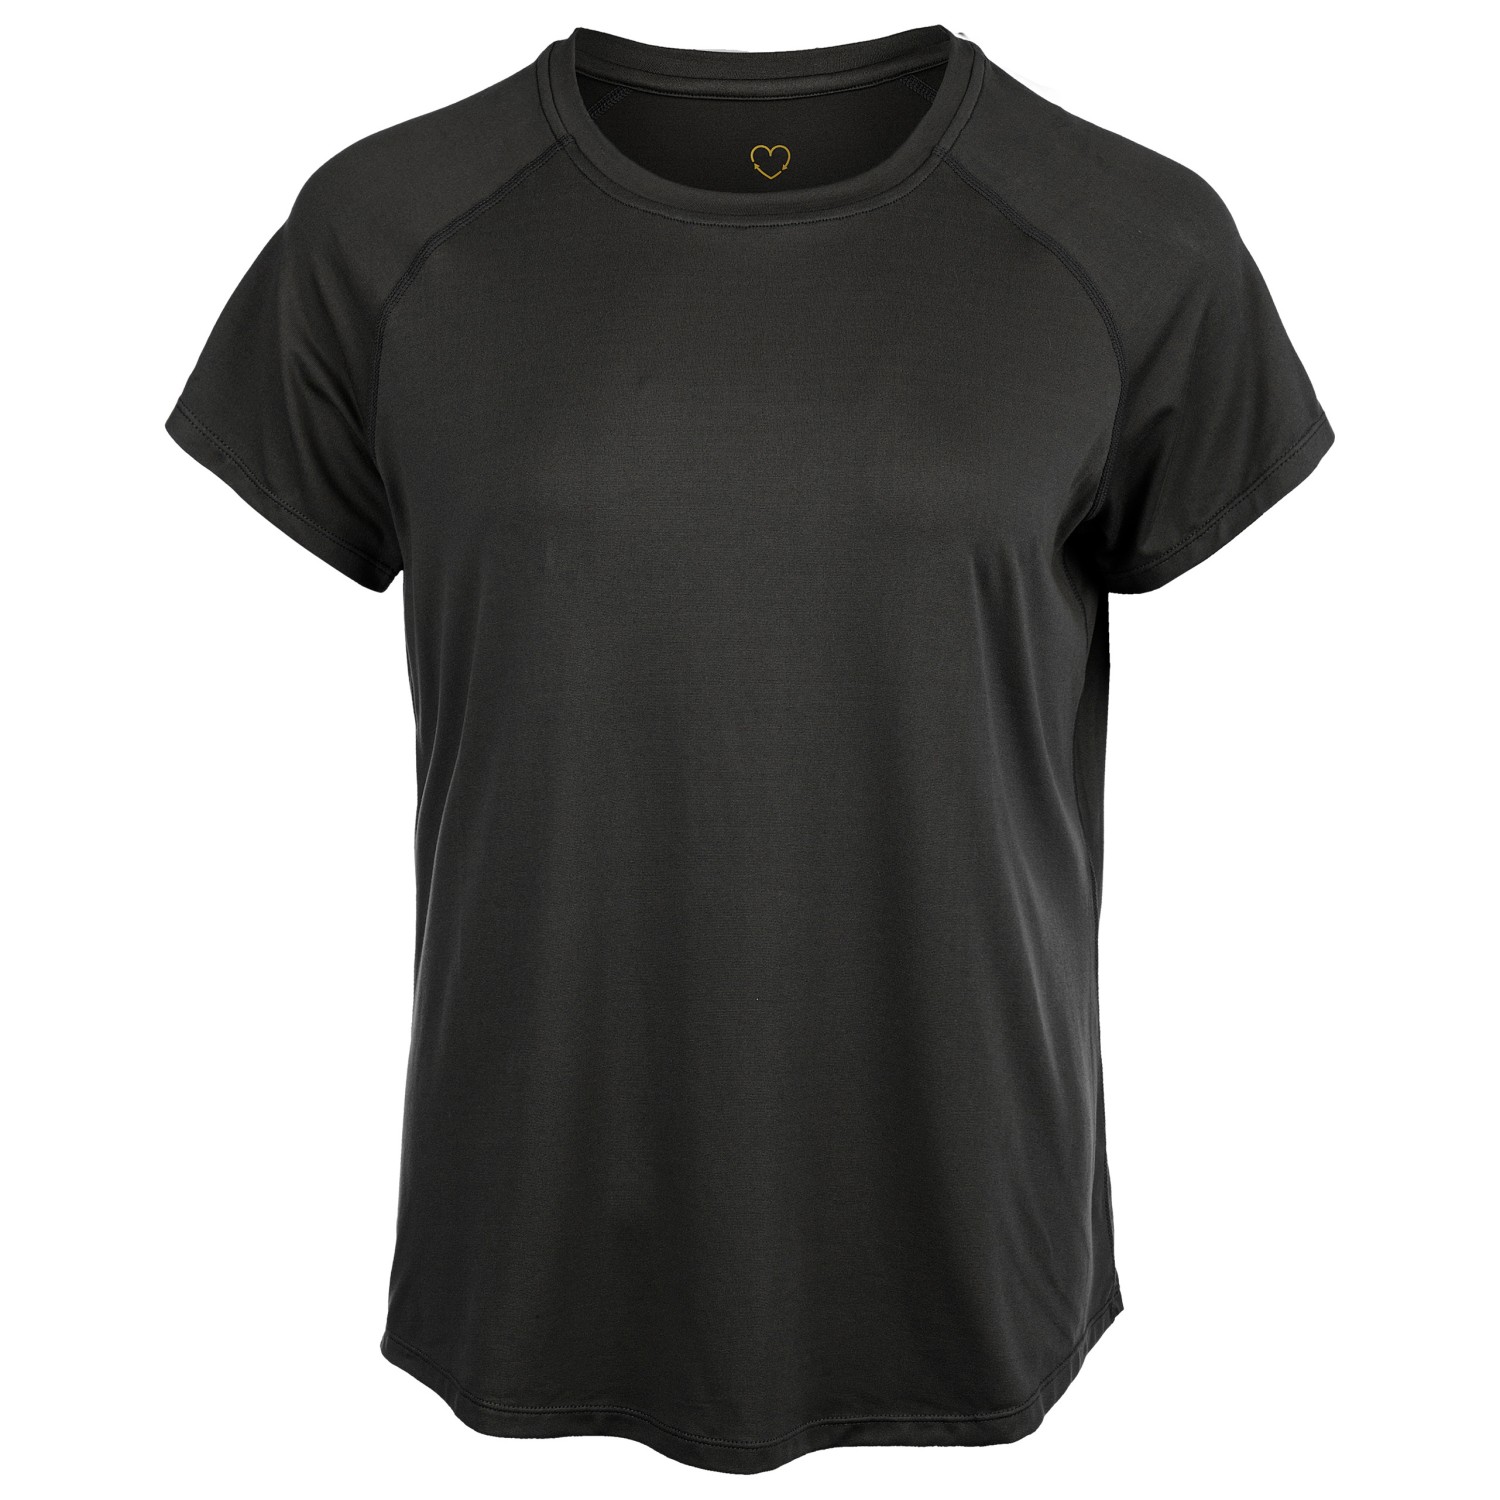 Функциональная рубашка Athlecia Women's Gaina S/S Tee, черный цена и фото